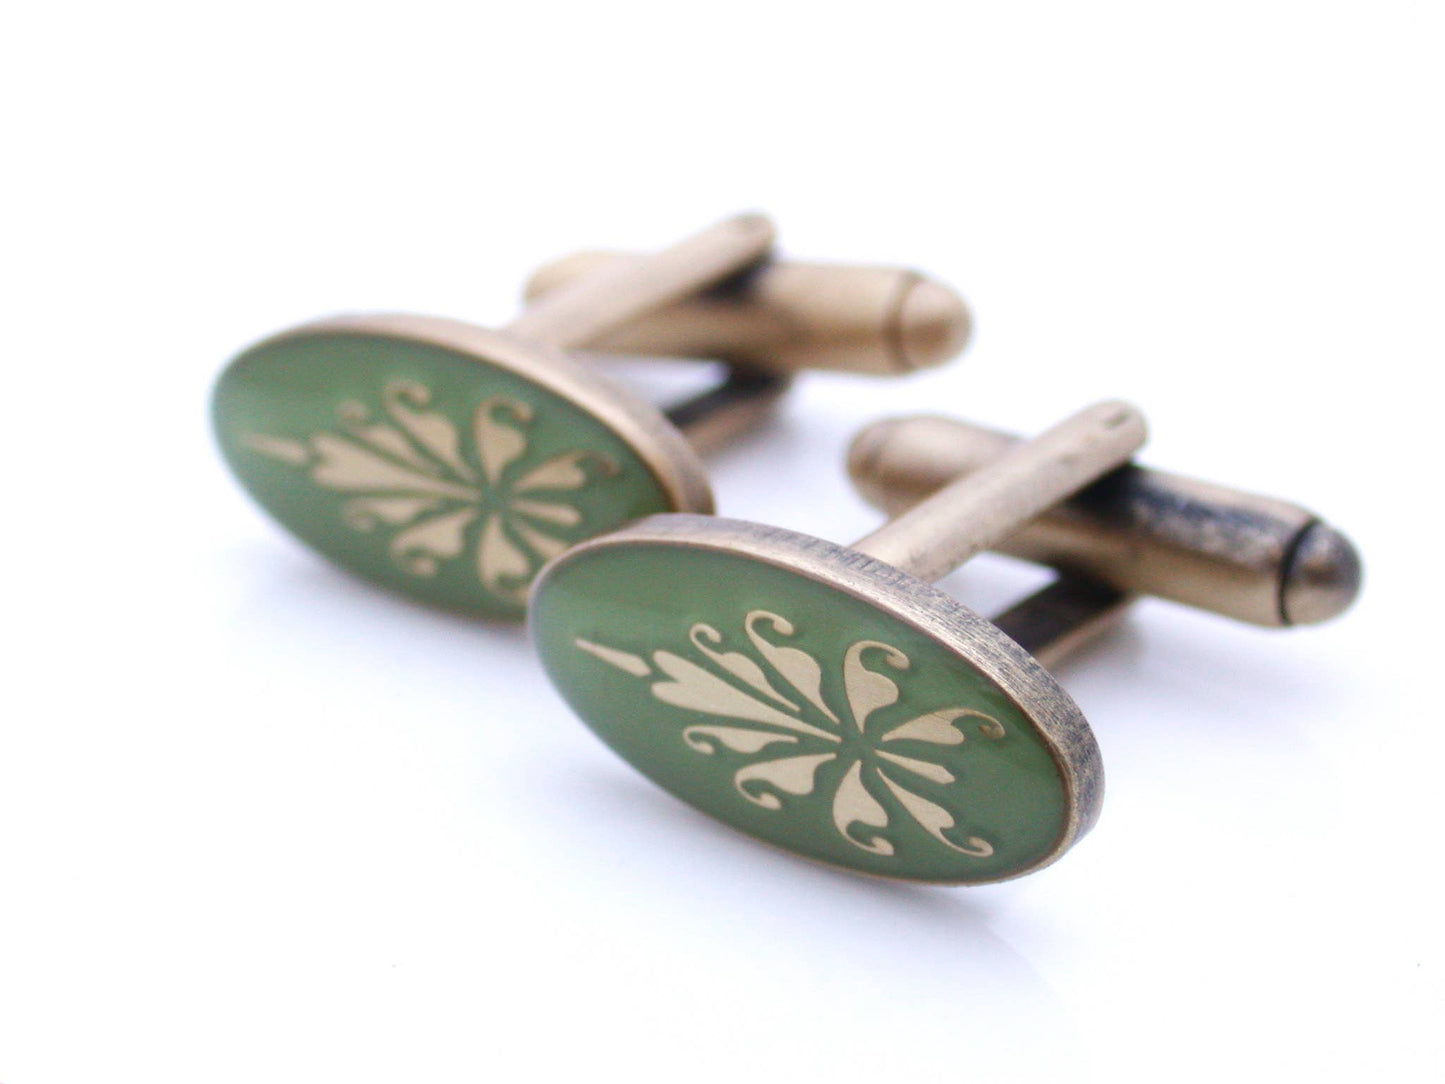 Antiqued gold oval cufflinks with fleur de lys pattern on green enamel